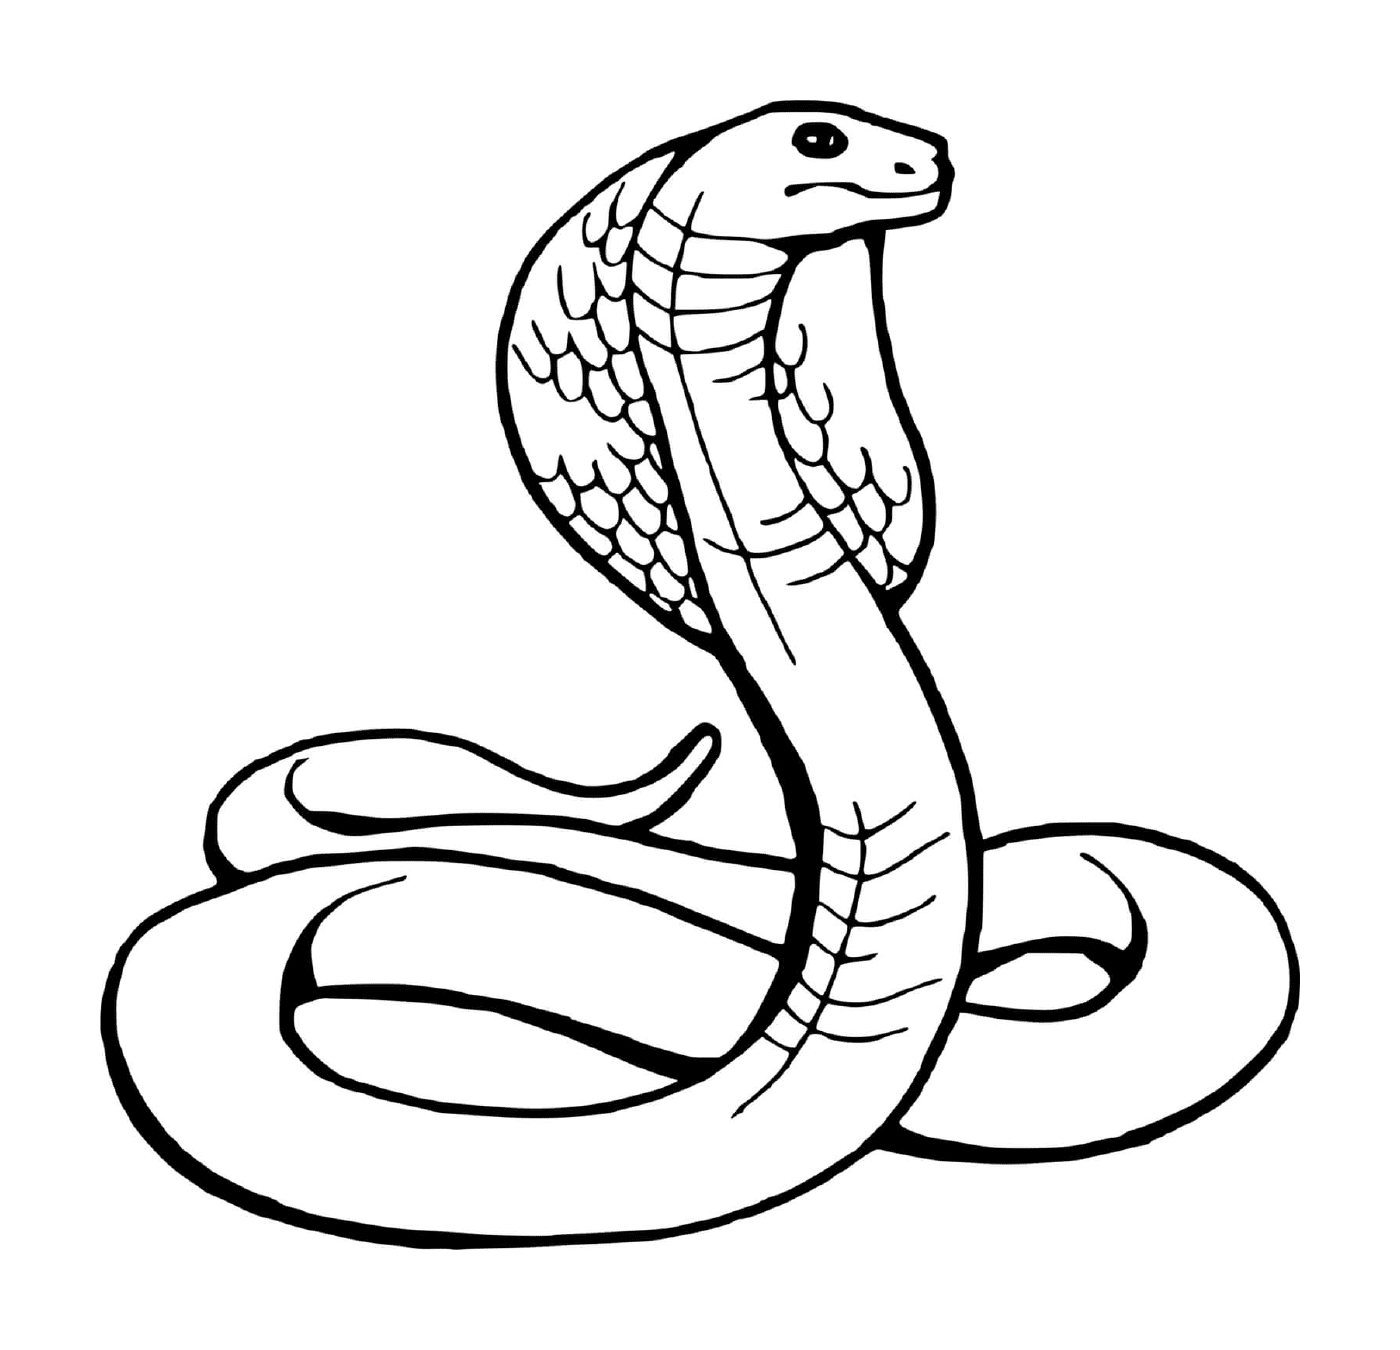  Snake, snake 